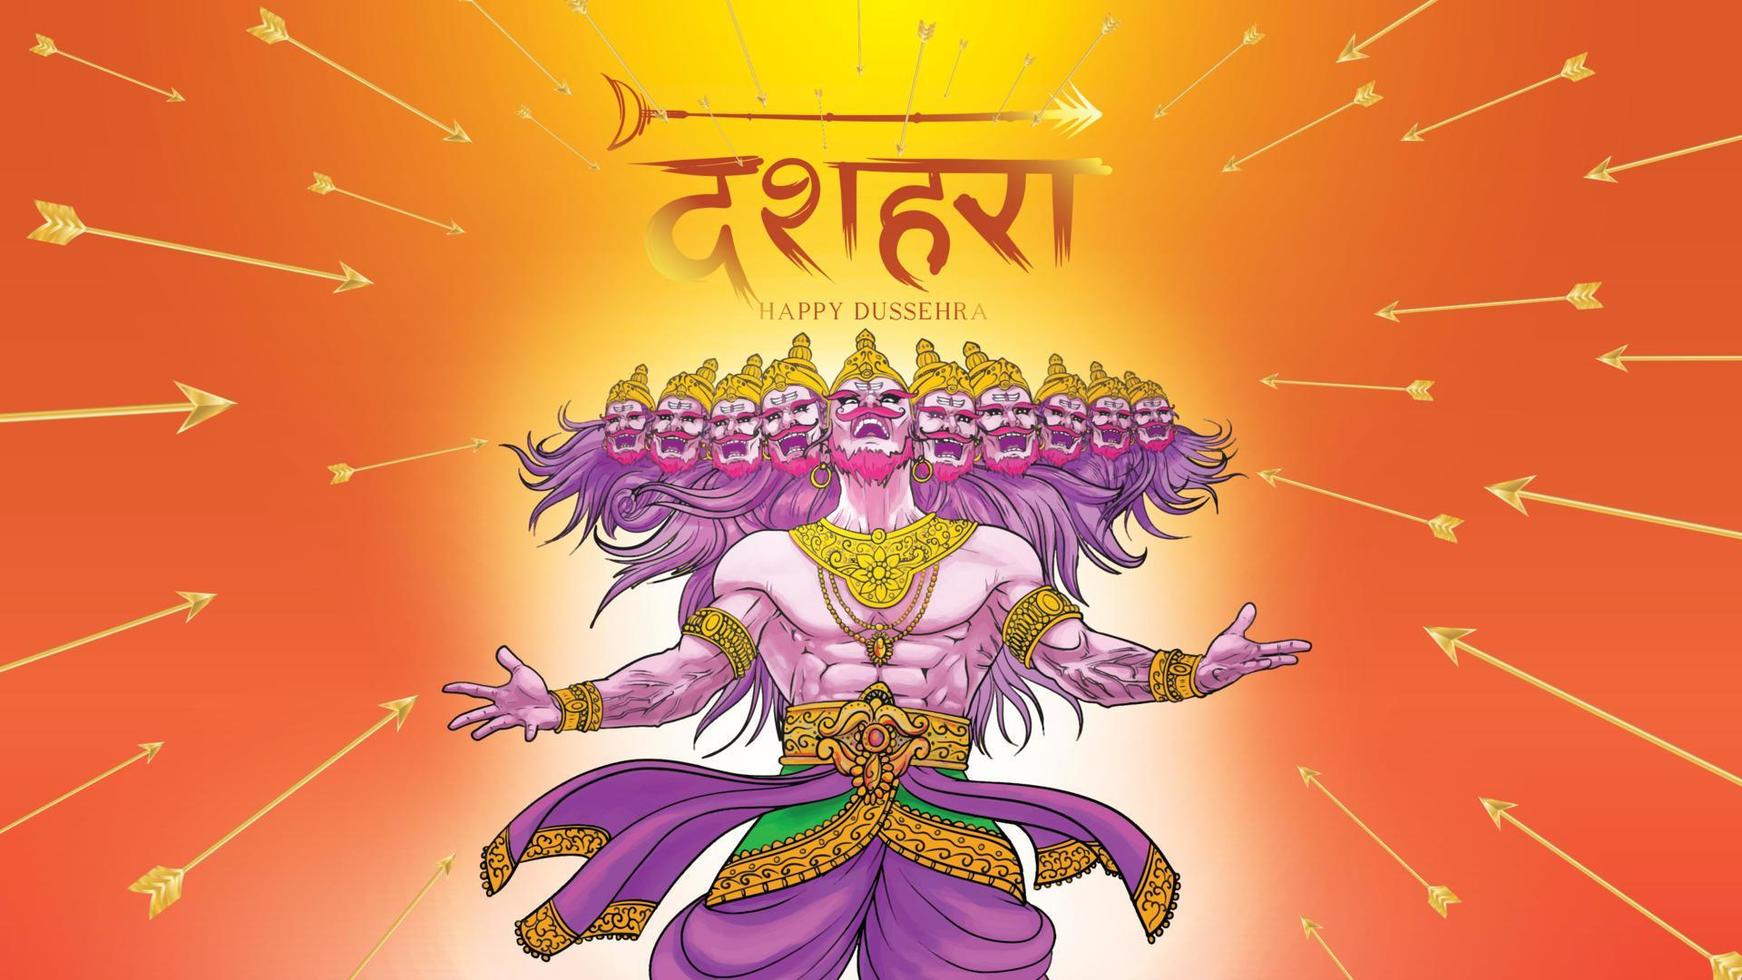 illustration vectorielle créative du seigneur rama tuant ravana dans le festival d'affiches happy dussehra navratri de l'inde. traduction dusséhra vecteur